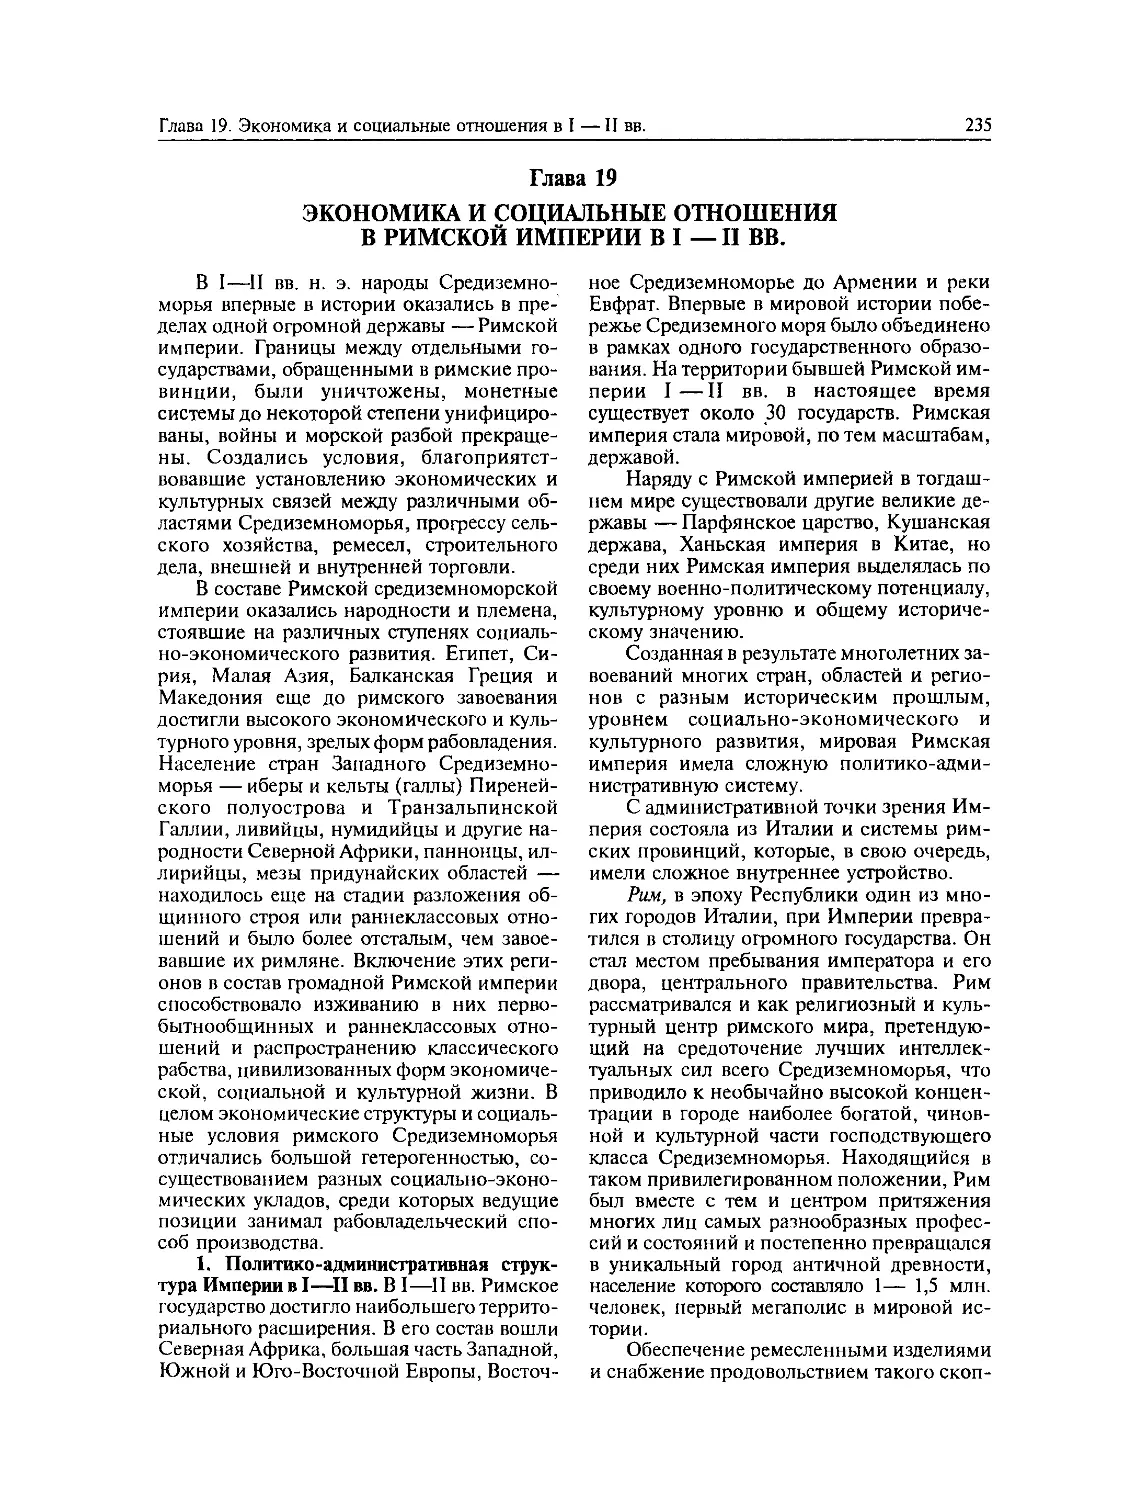 Политико-административная структура Империи в I—II вв.